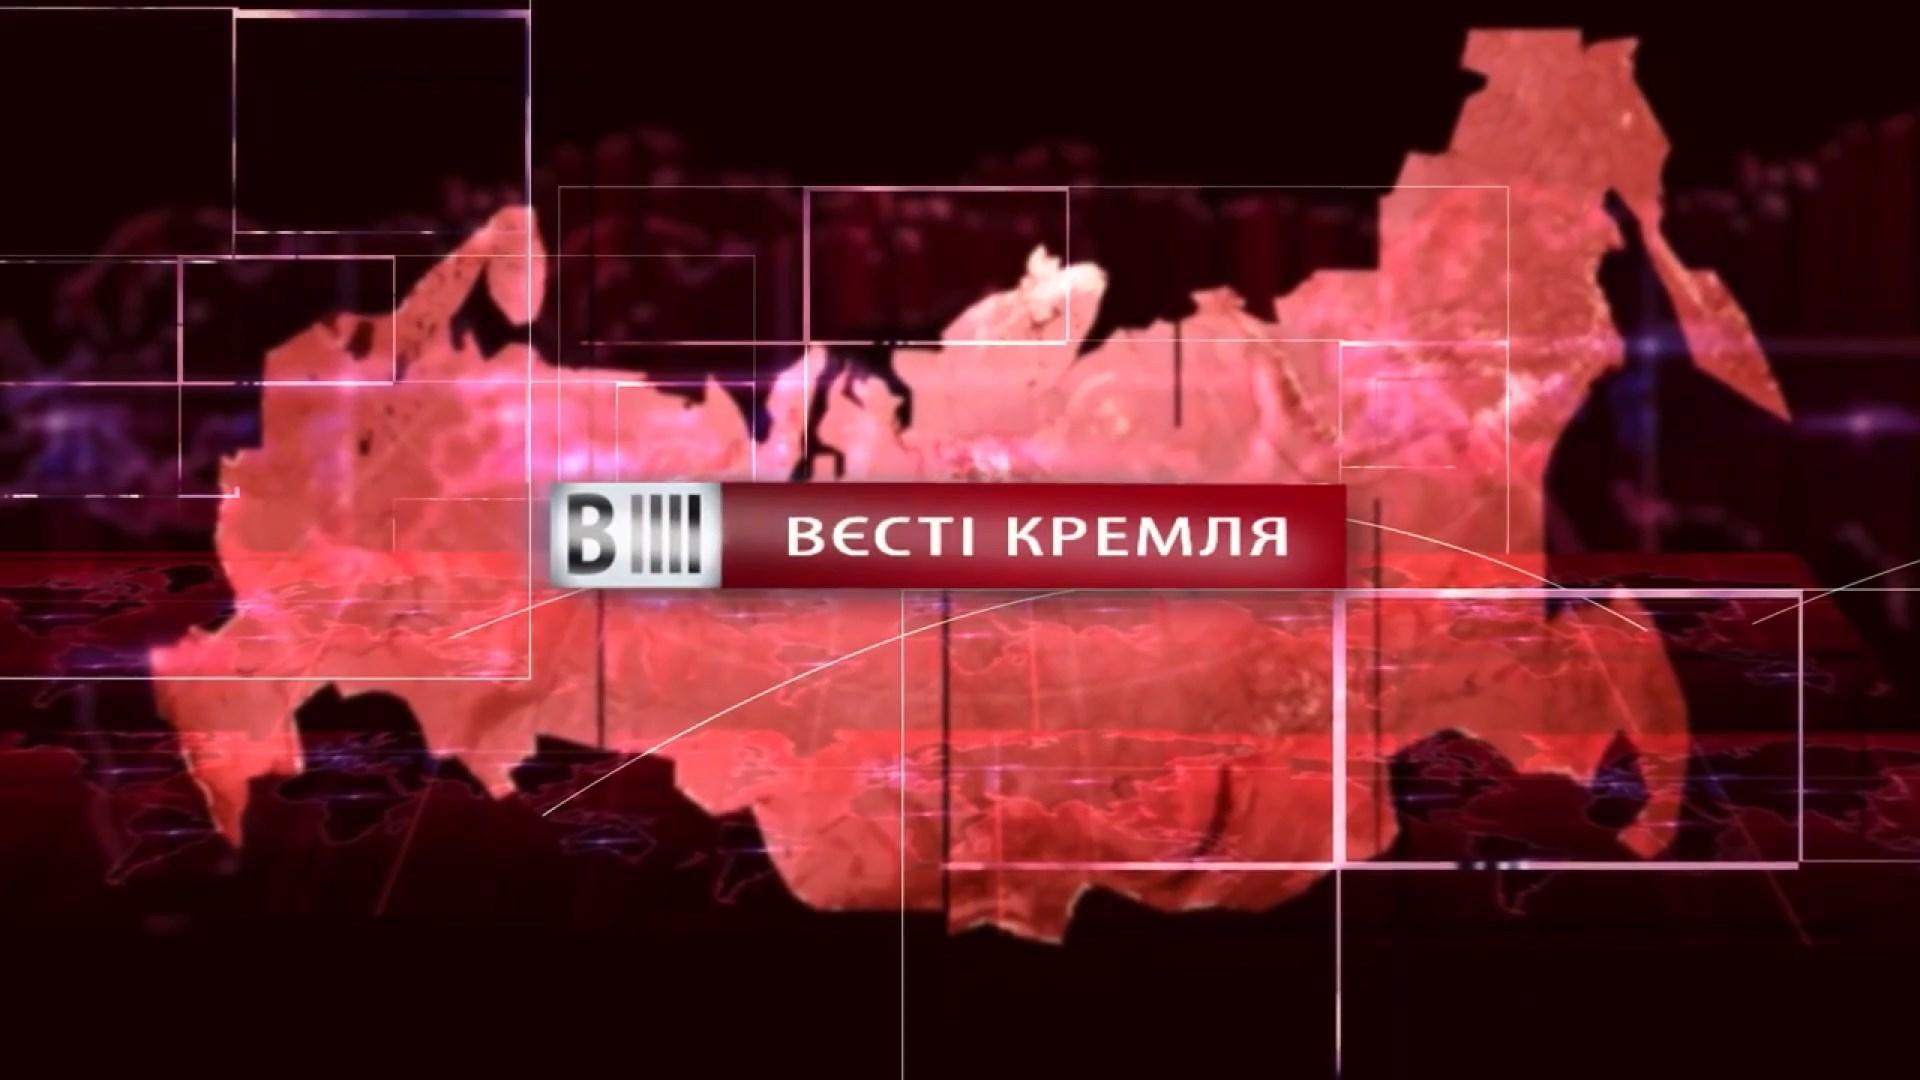 Смотрите "Вести Кремля". Байки Путина. Кадыров против всего мира